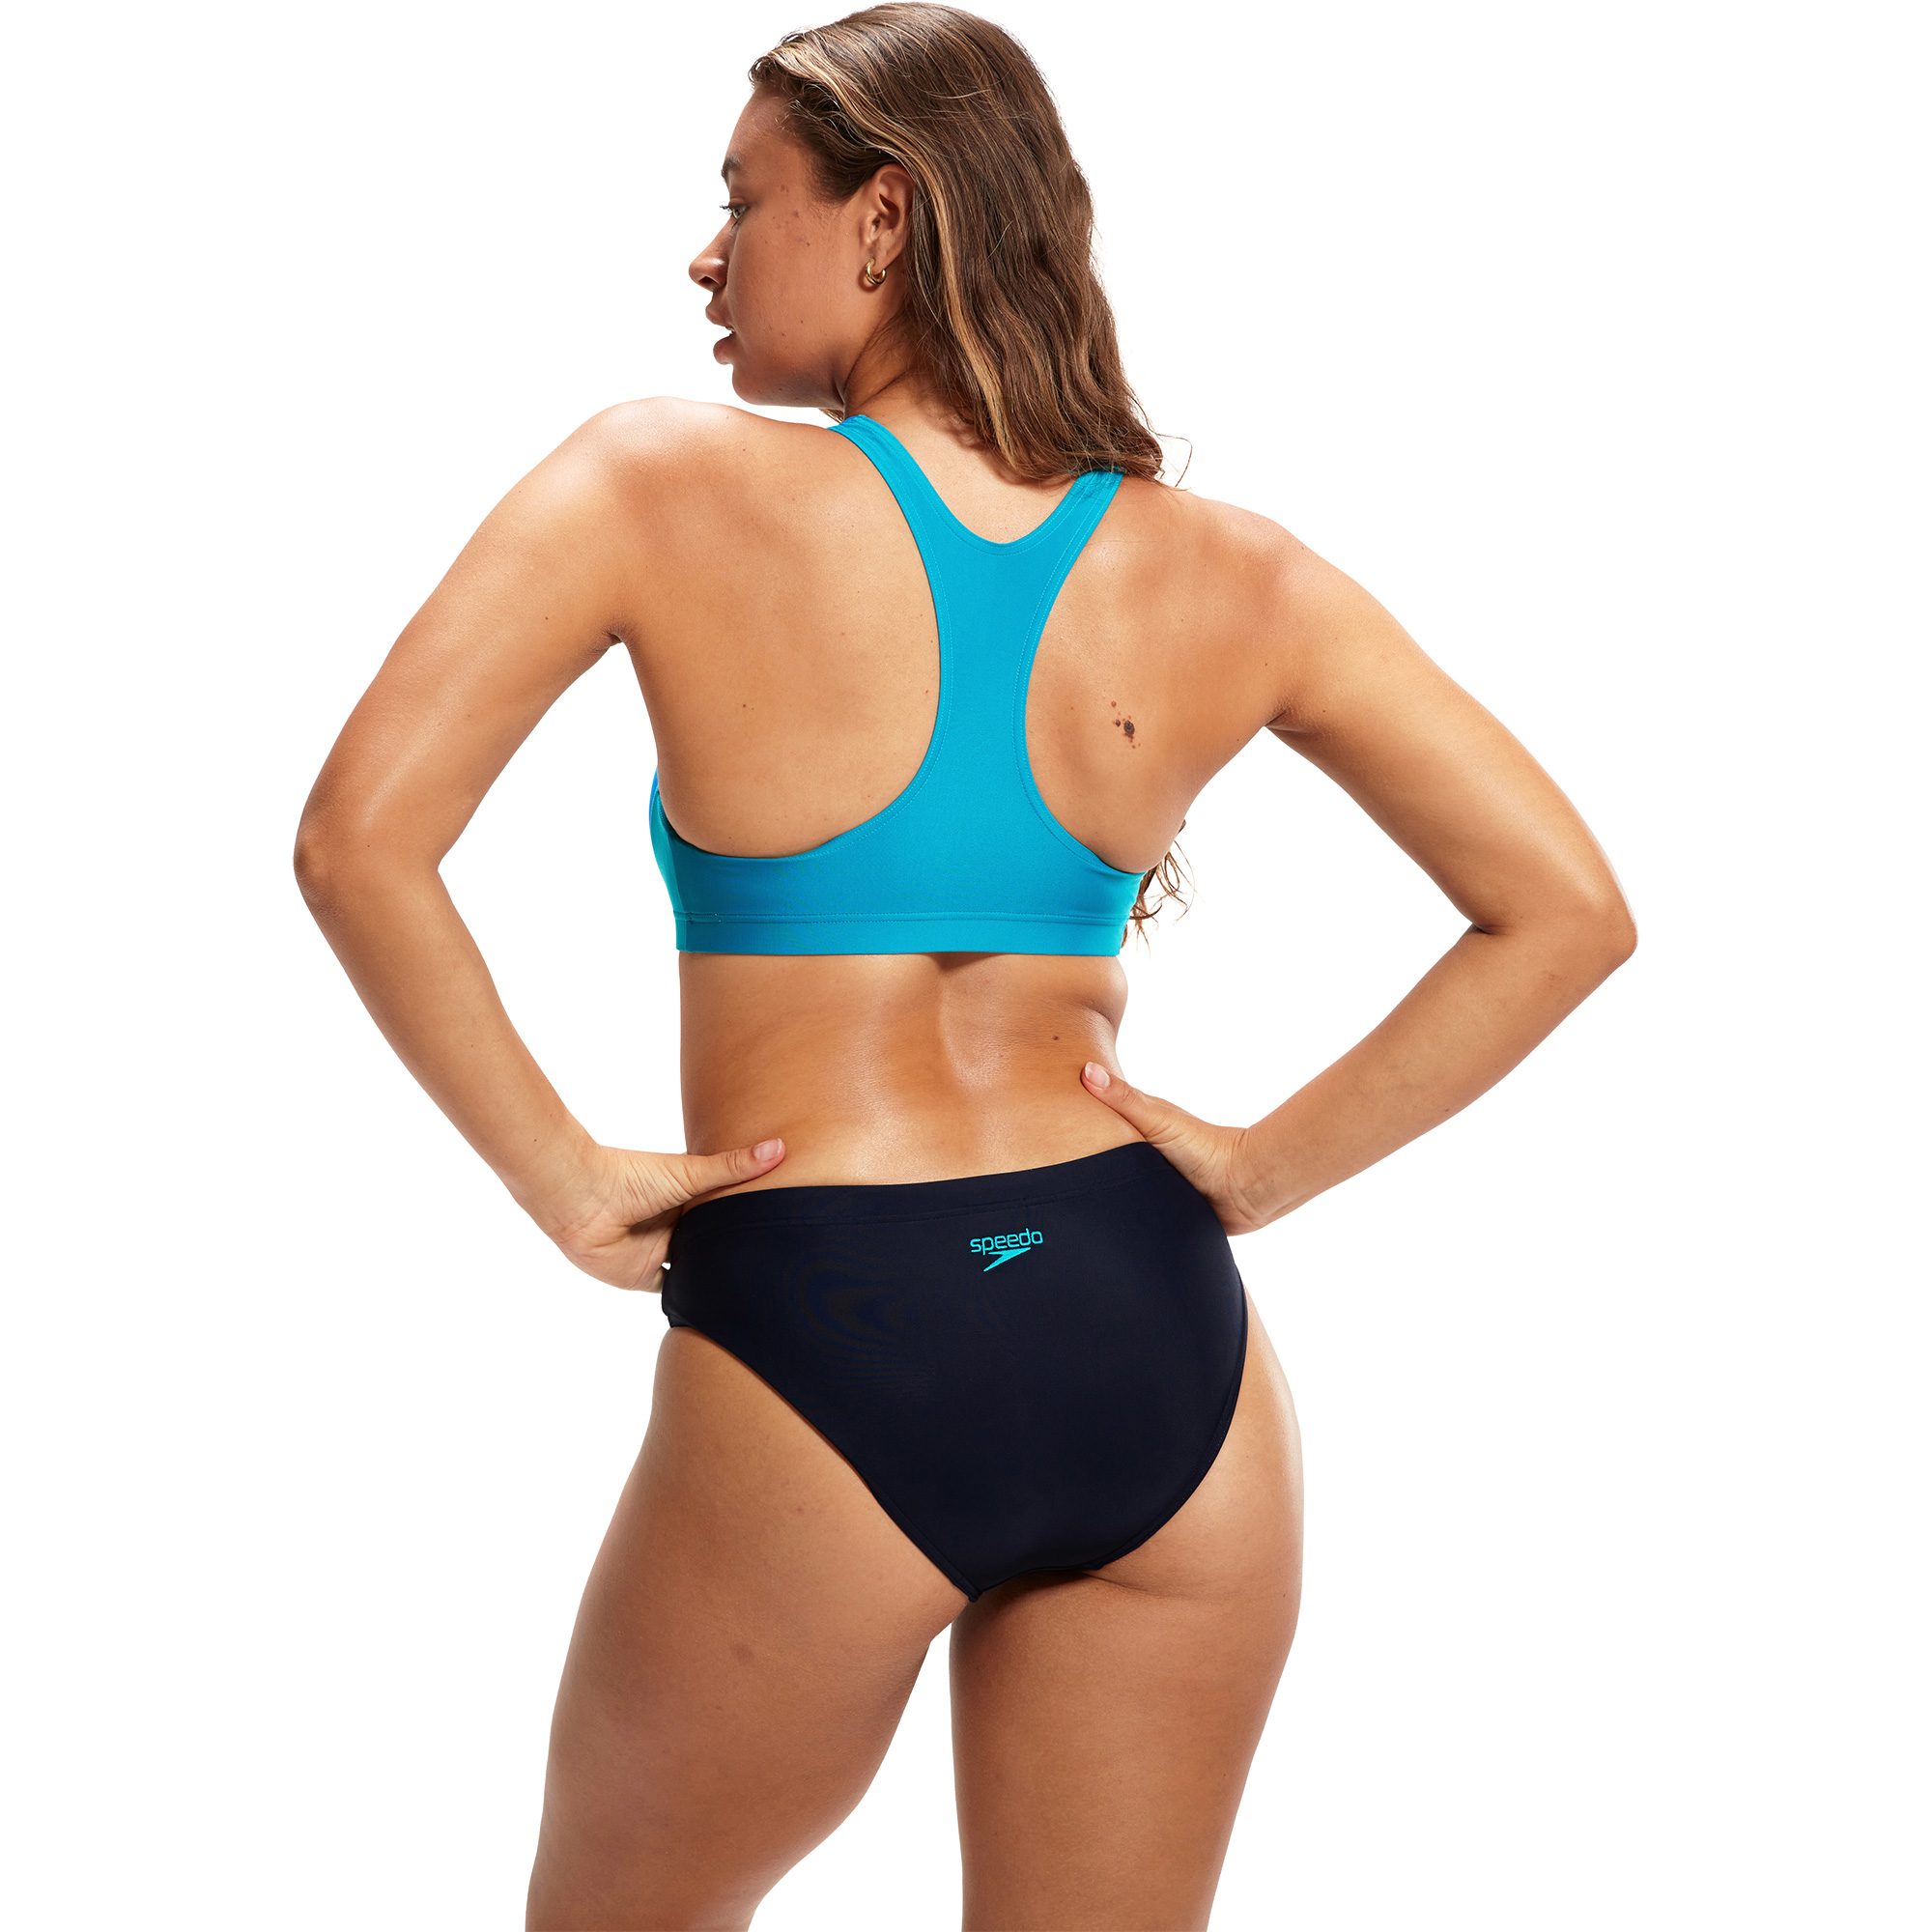 Damen Bikini Bittl Splice kaufen blau - Sport Speedo Shop im Colourblock